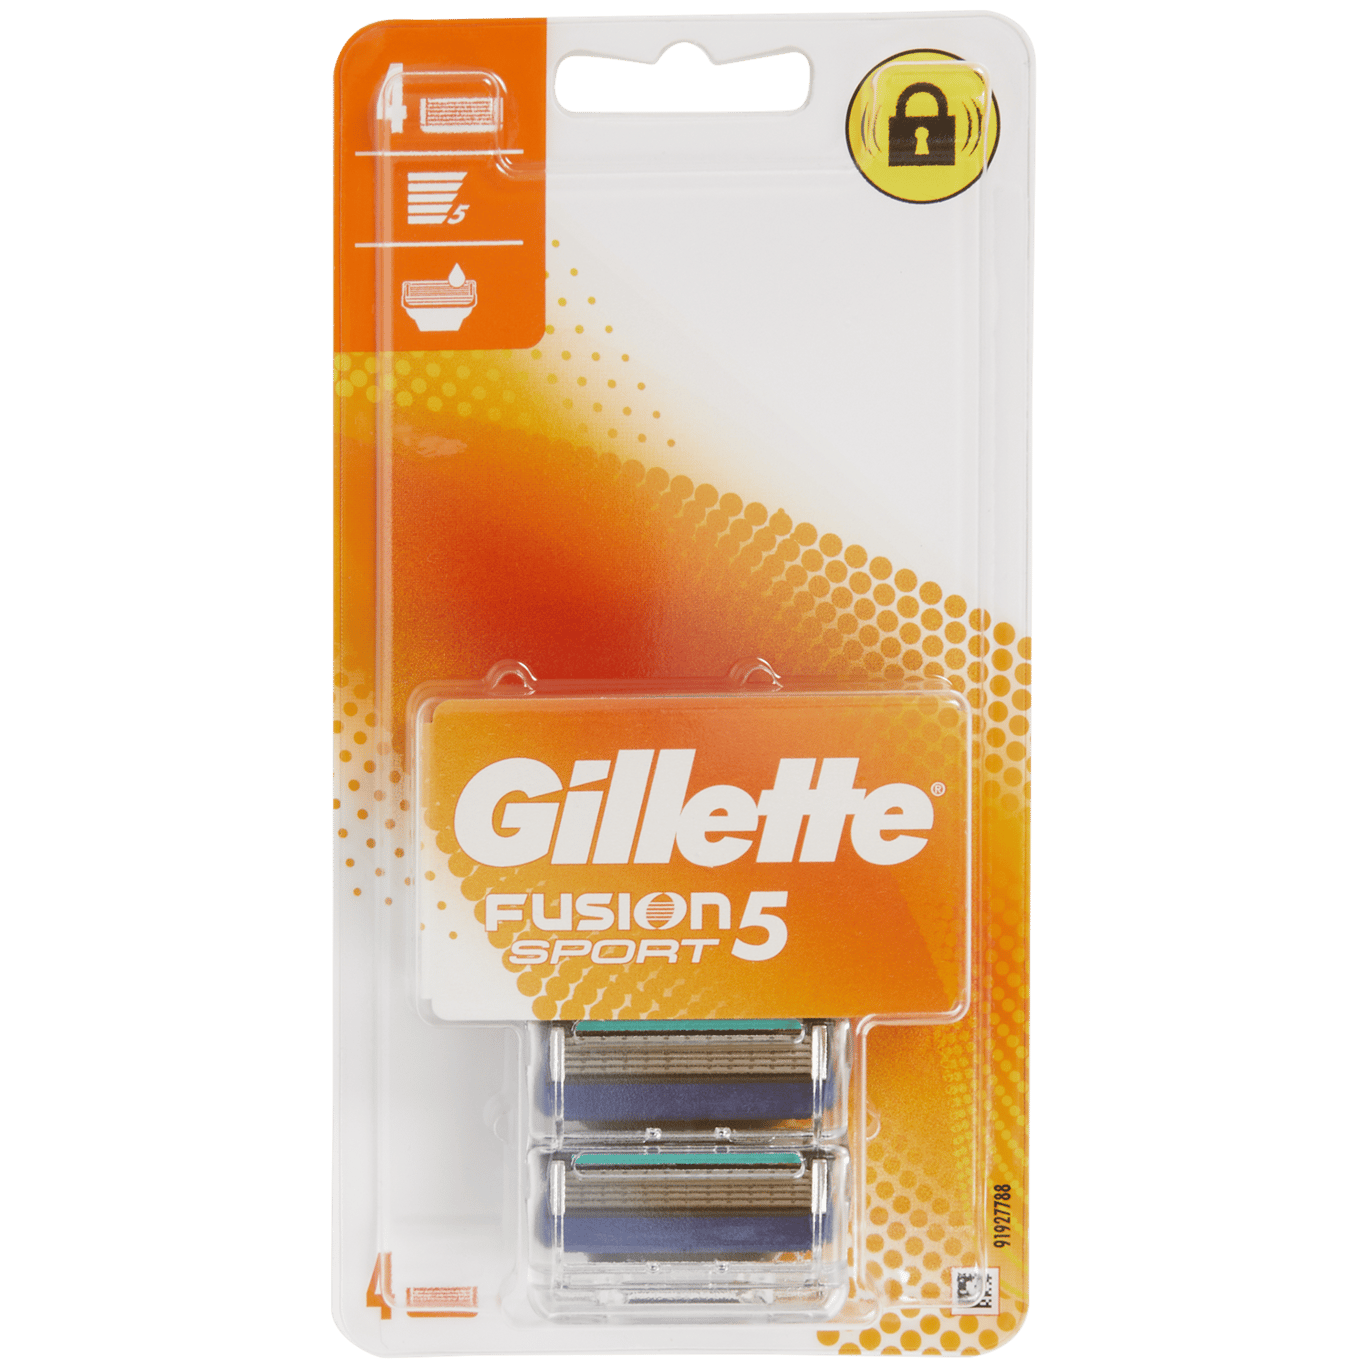 Lâminas de barbear Gillette Fusion5 Desporto